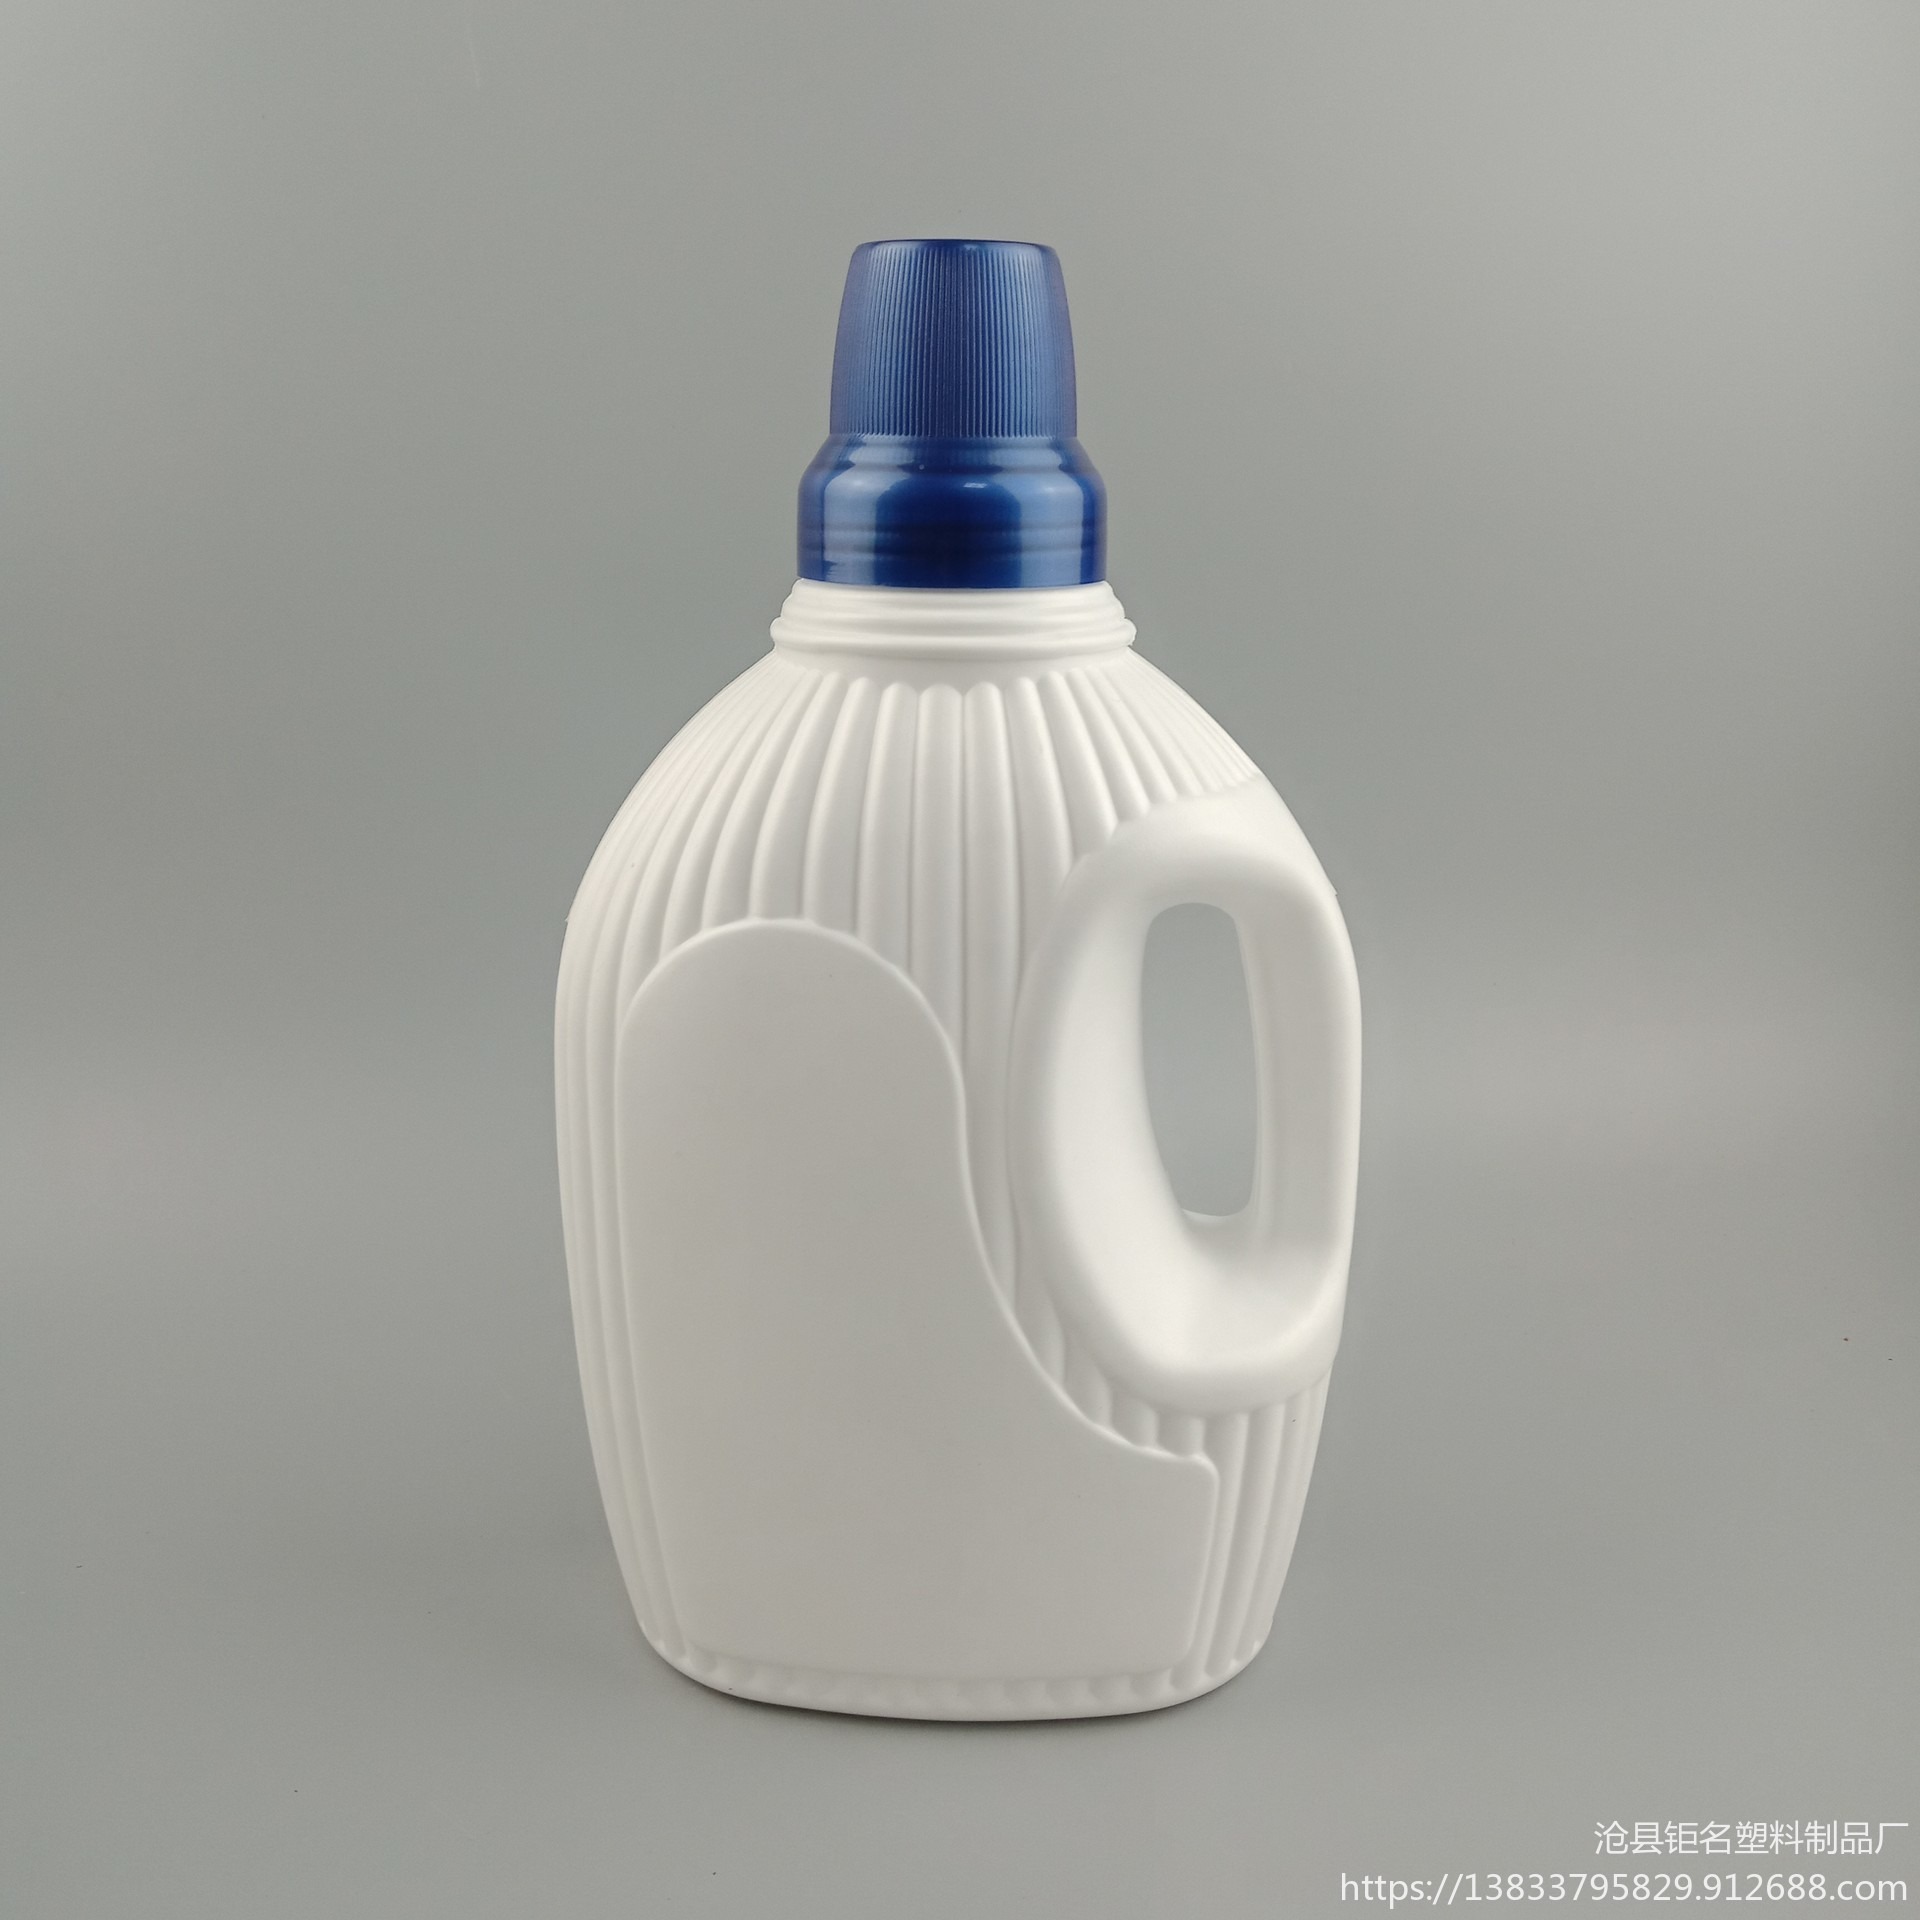 现货供应 塑料瓶 2升 3升 洗衣液瓶 洗手液瓶 洗洁精瓶  加工 定制 洗衣液壶 洗衣液桶 外型设计 模具生产